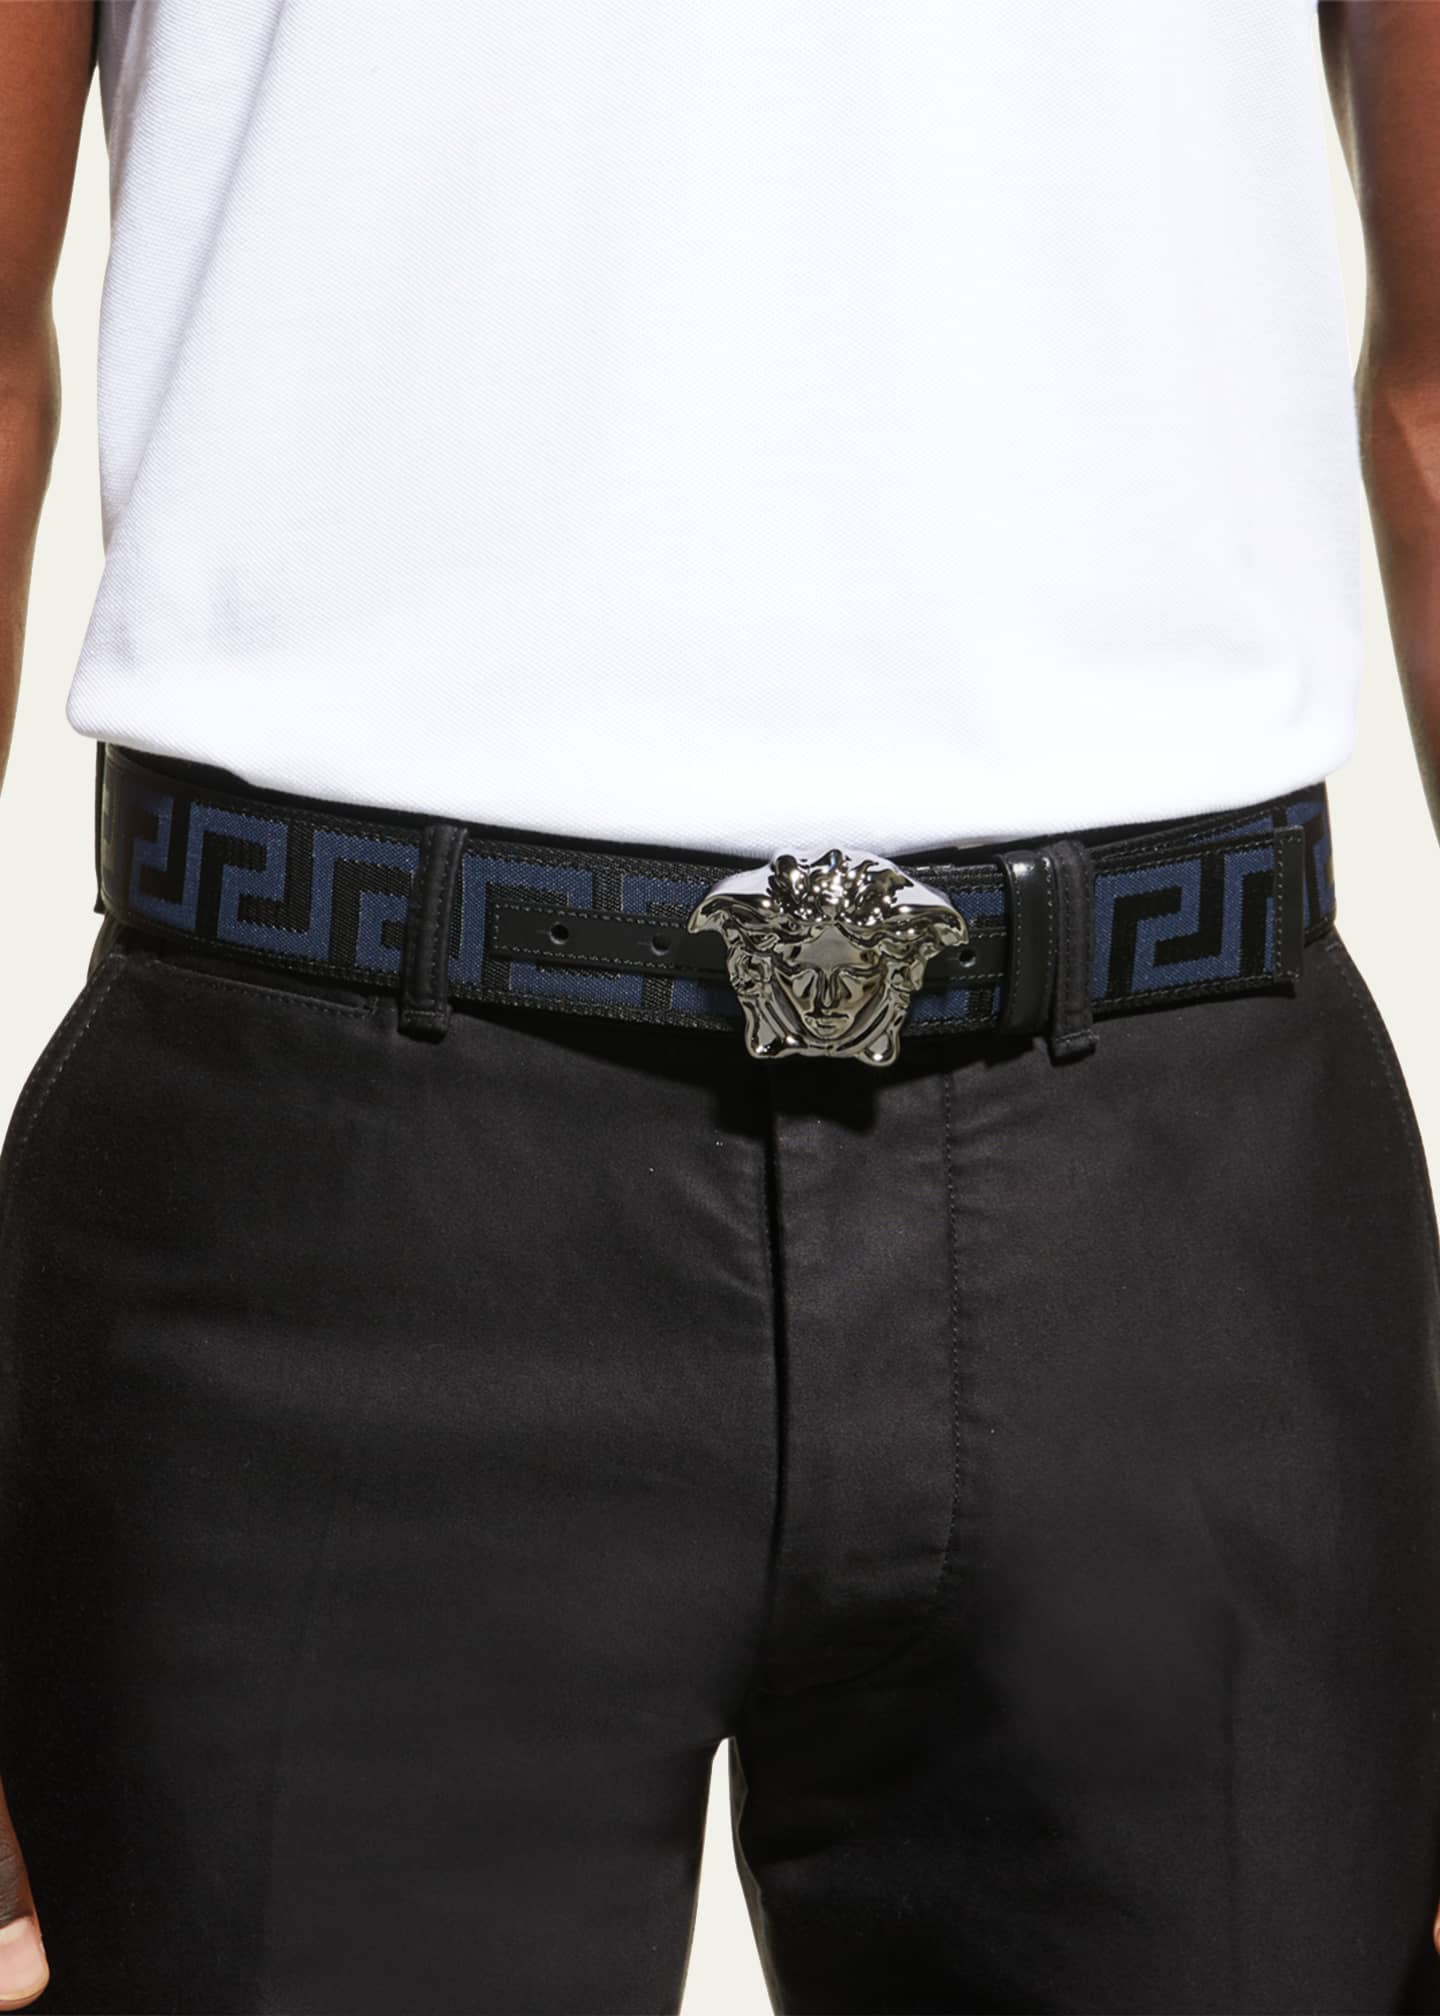 Versace Boy's Medusa Head Belt, Size S-XL - Bergdorf Goodman